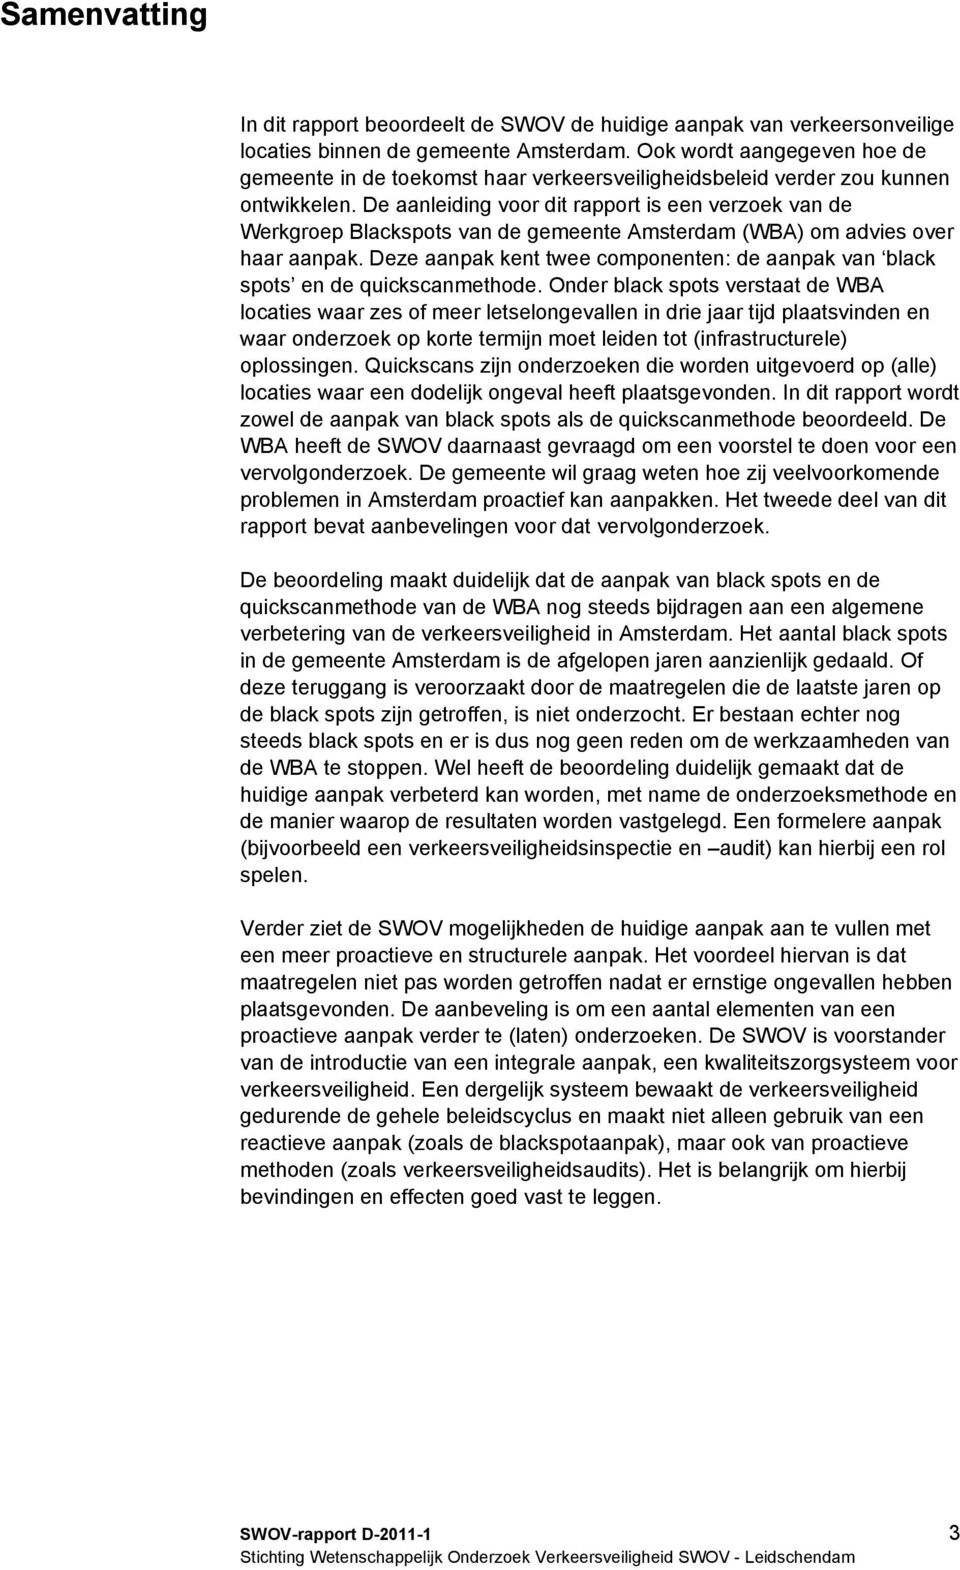 De aanleiding voor dit rapport is een verzoek van de Werkgroep Blackspots van de gemeente Amsterdam (WBA) om advies over haar aanpak.